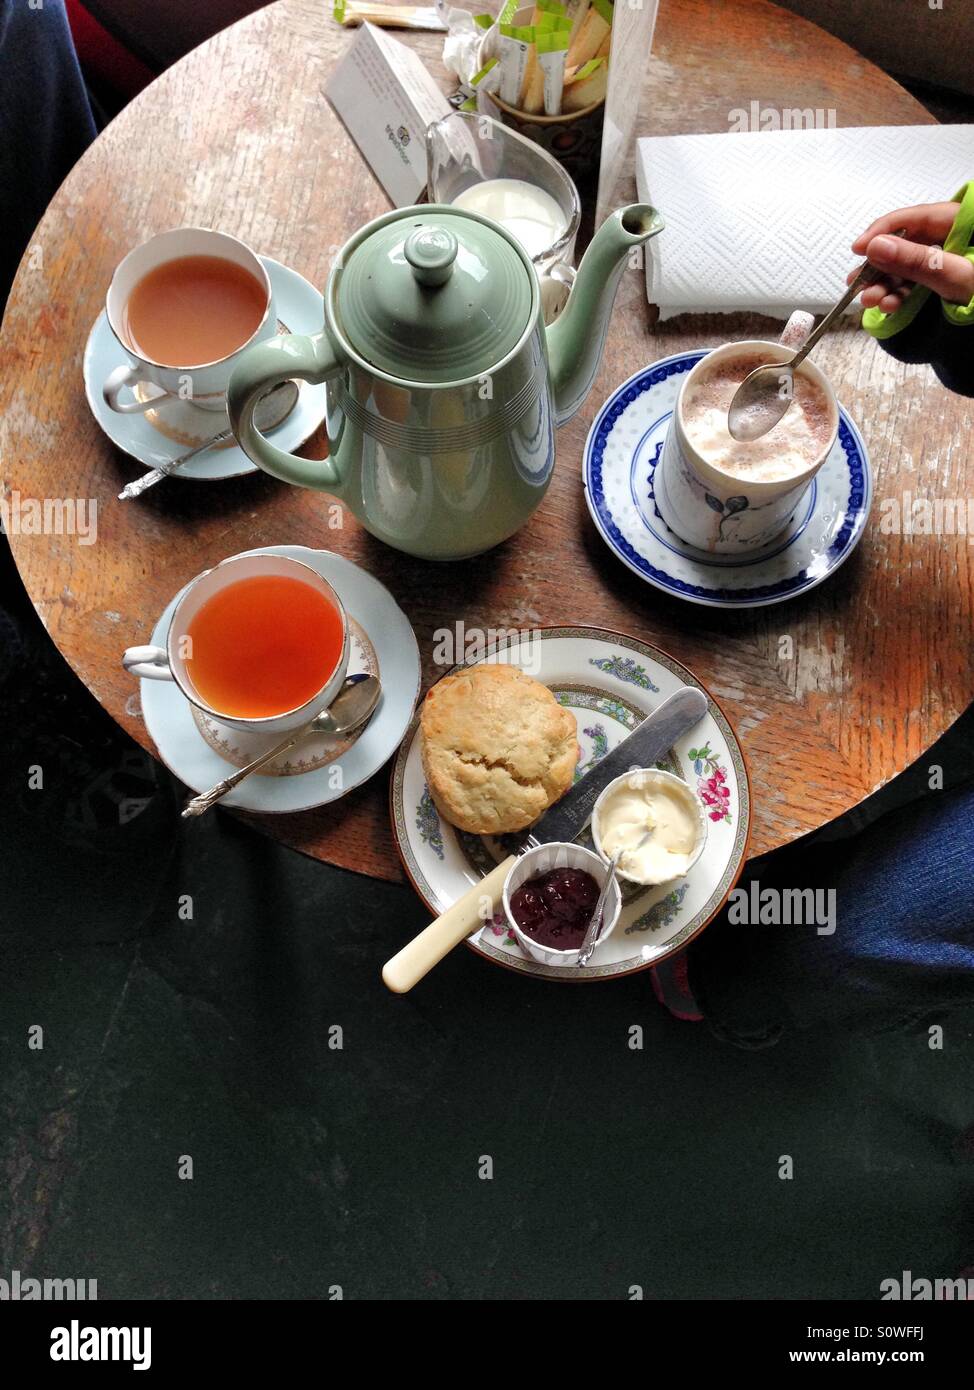 Tea and scones Stock Photo